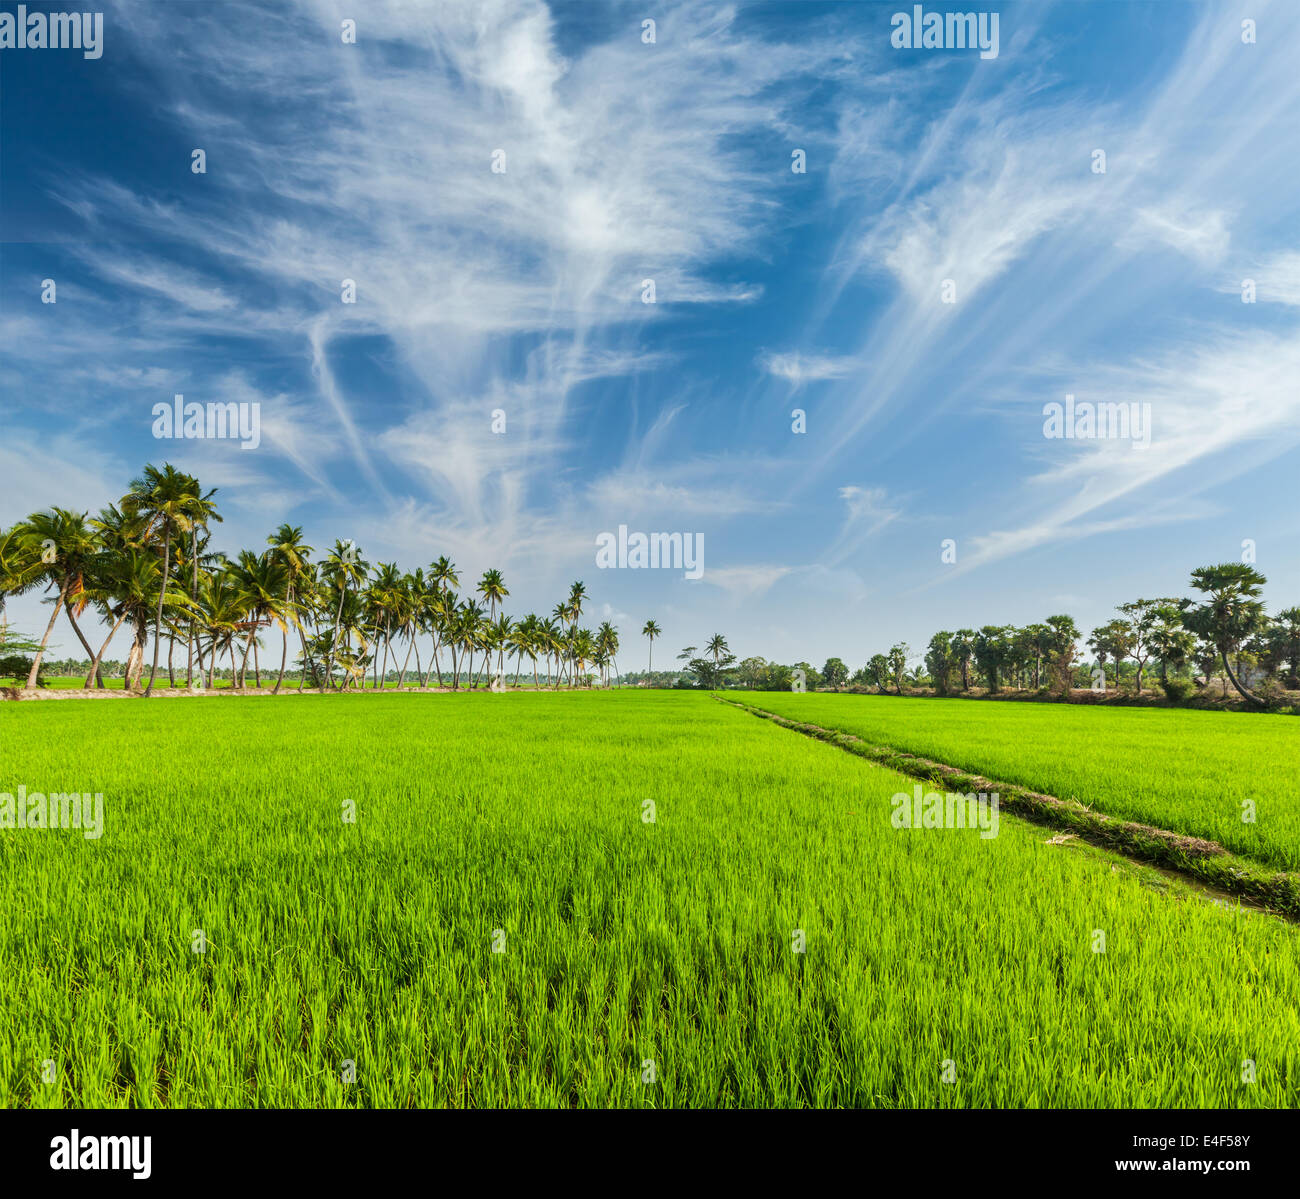 Ländliches indische Motiv - Reis Reisfeld und Palmen. Tamil Nadu, Indien Stockfoto